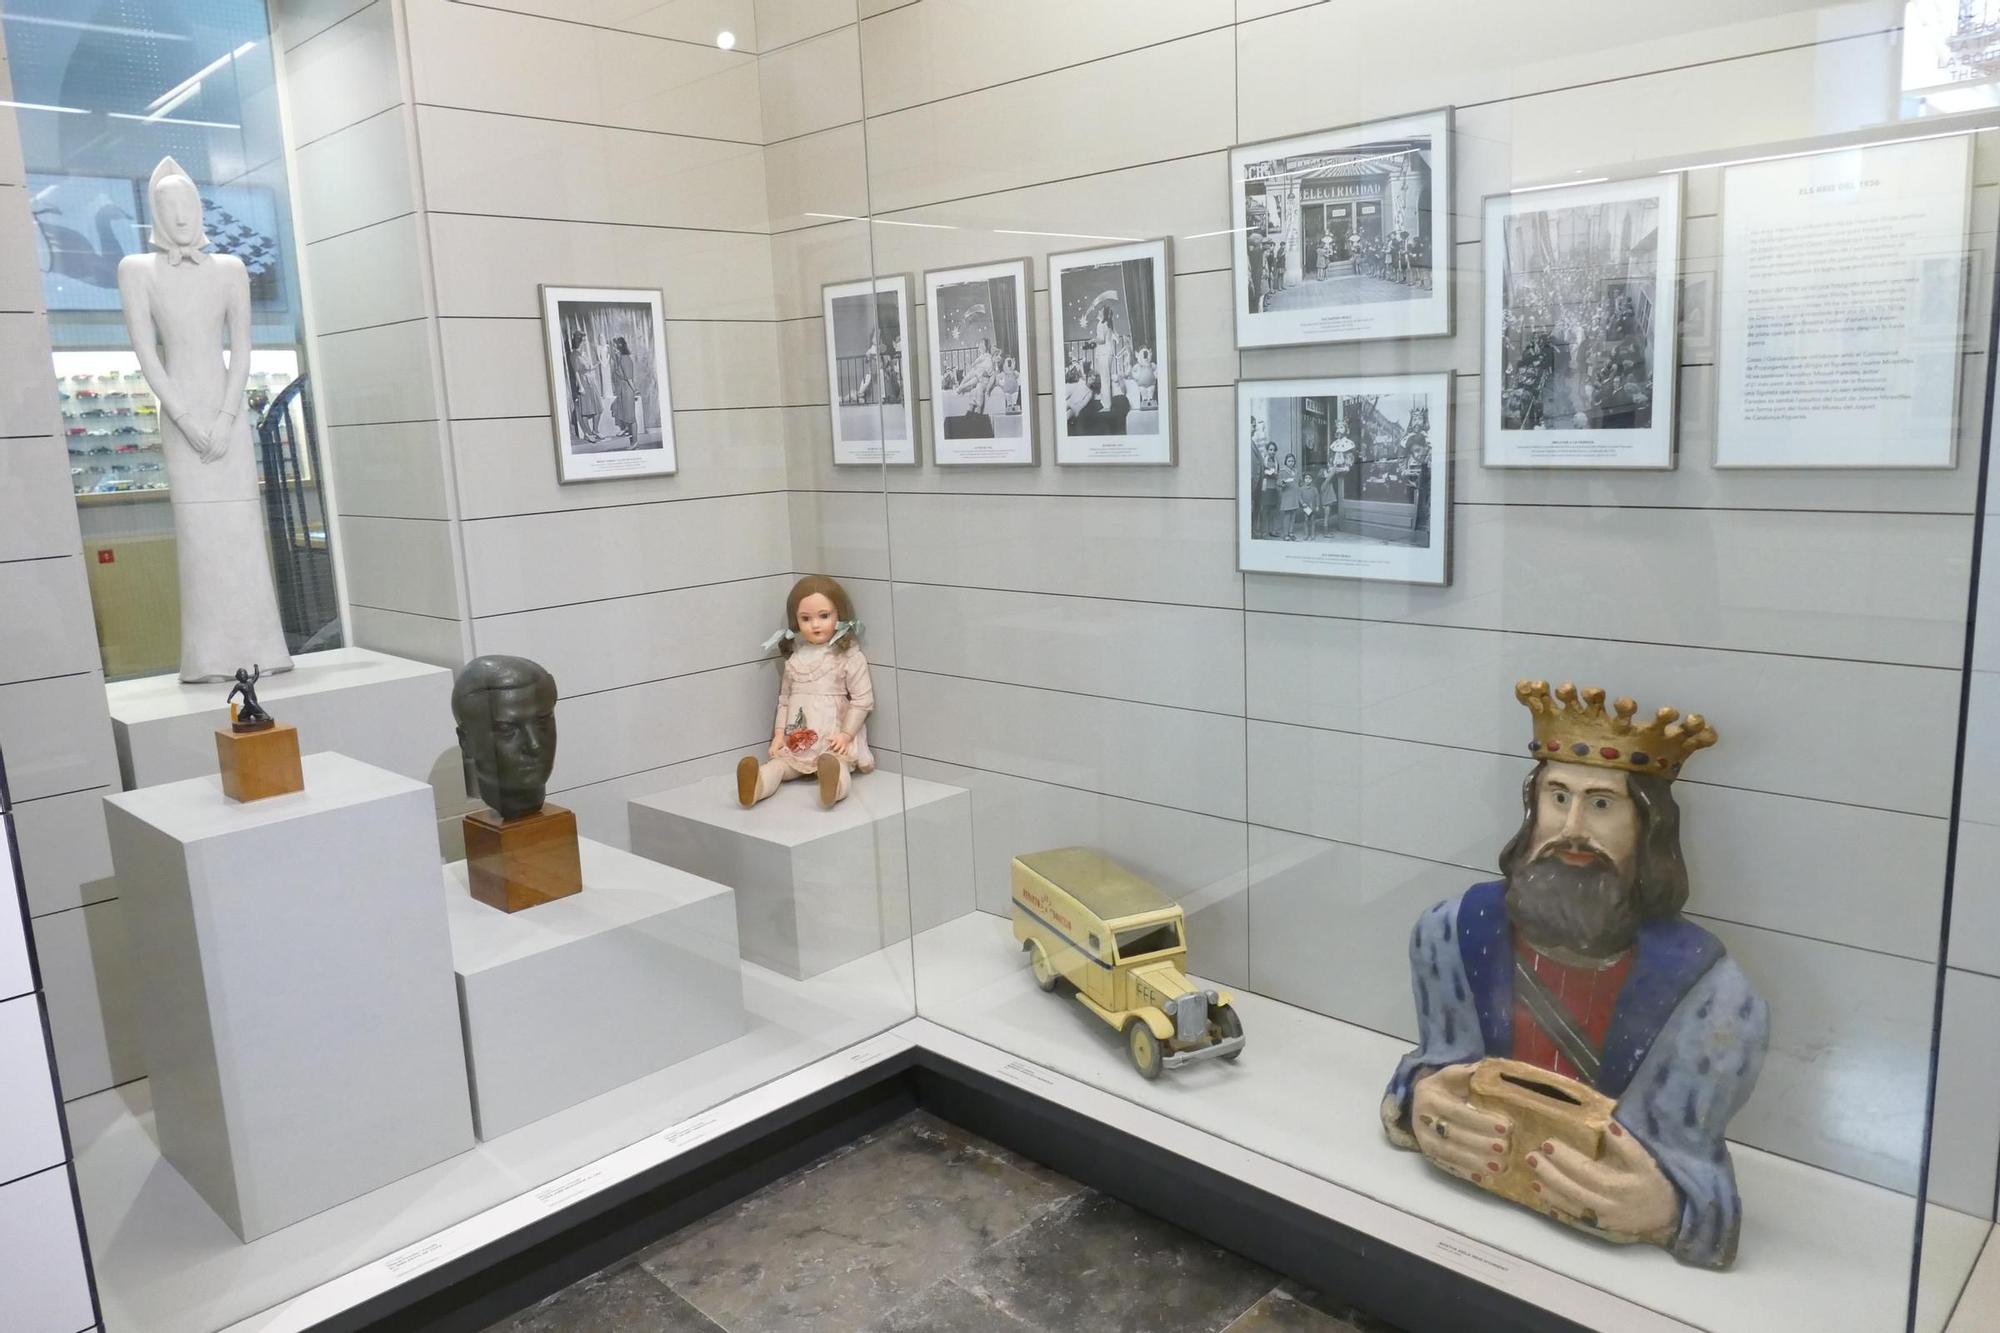 L’exposició “Gabriel Casas i Galobardes. Fotos amb joguets” al Museu del Joguet de Catalunya